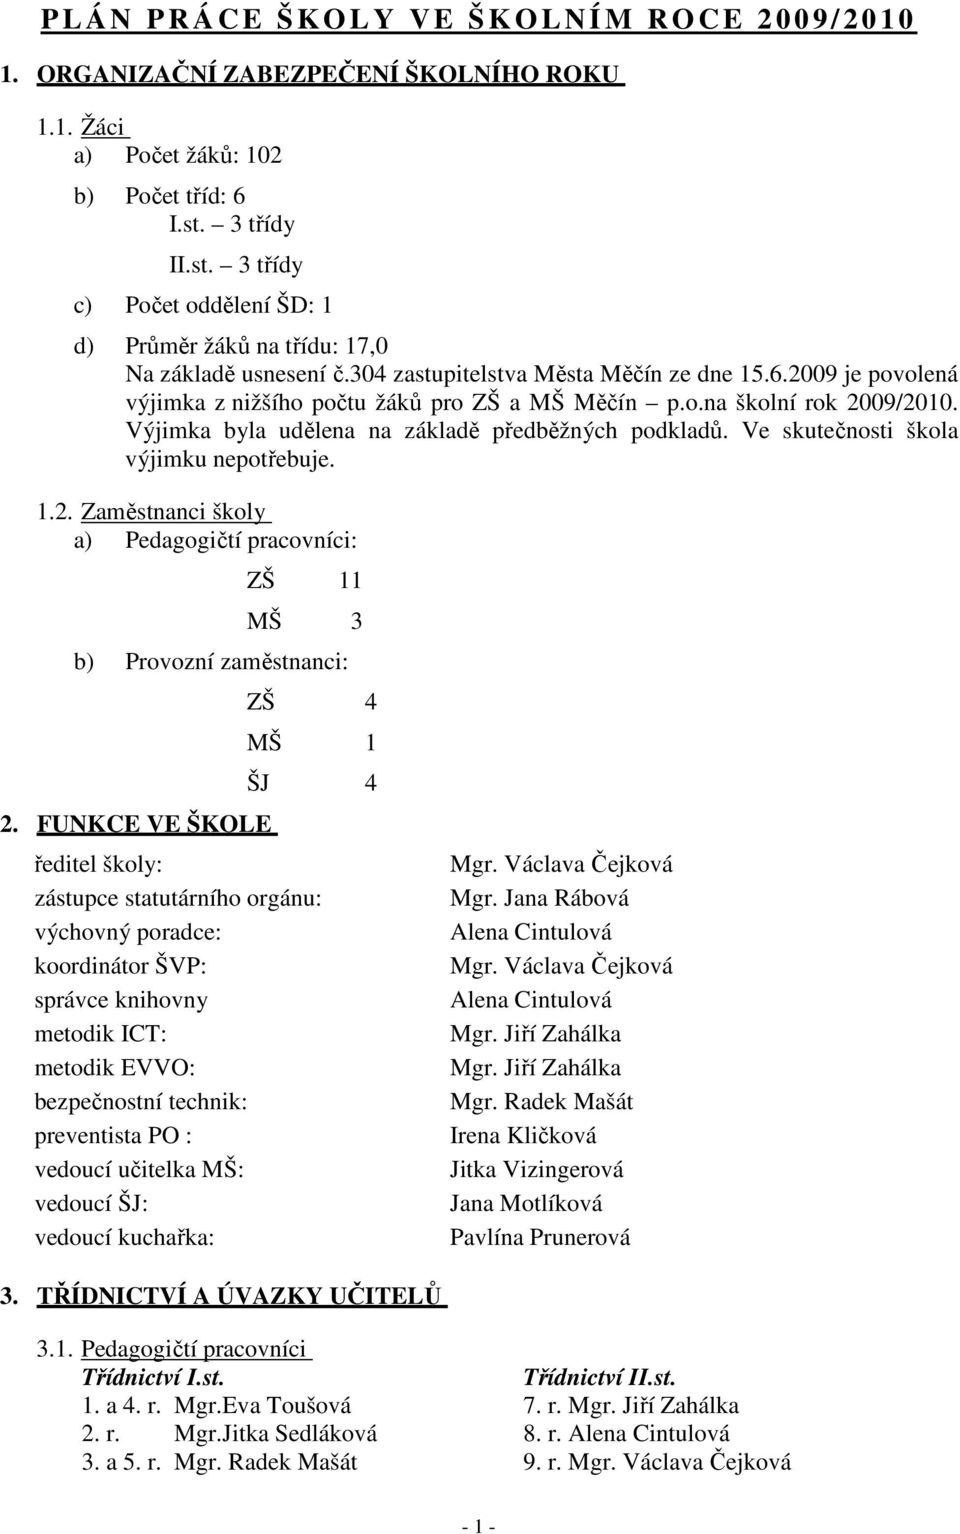 2009 je povolená výjimka z nižšího počtu žáků pro ZŠ a MŠ Měčín p.o.na školní rok 2009/2010. Výjimka byla udělena na základě předběžných podkladů. Ve skutečnosti škola výjimku nepotřebuje. 1.2. Zaměstnanci školy a) Pedagogičtí pracovníci: ZŠ 11 MŠ 3 b) Provozní zaměstnanci: 2.